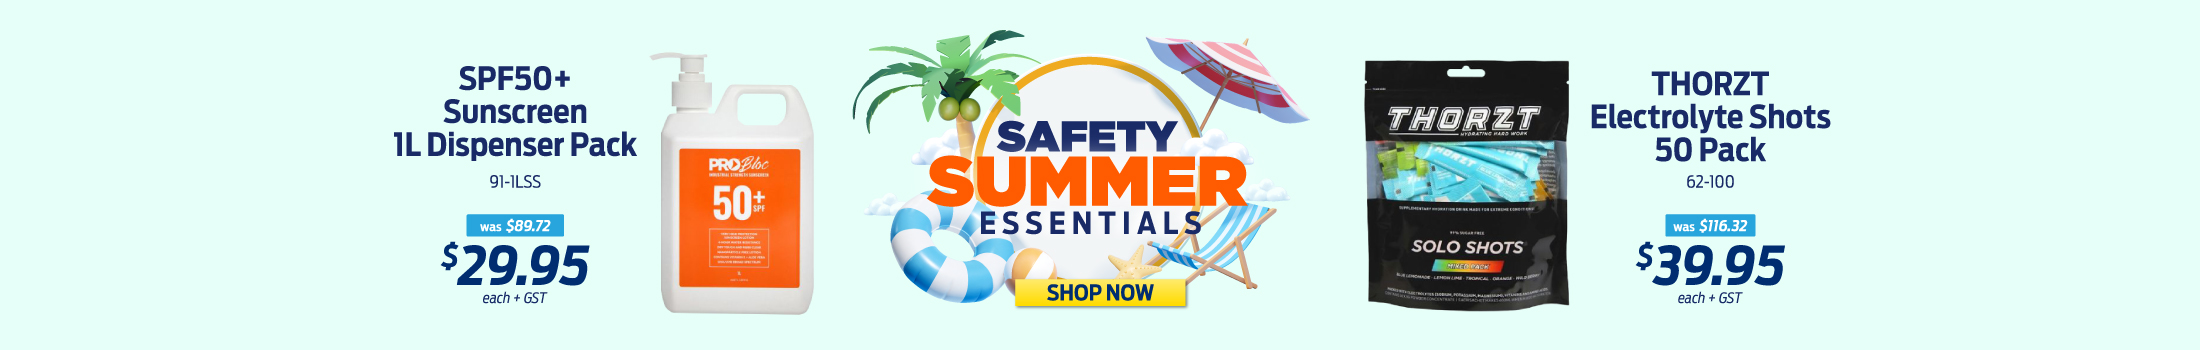 Safety Summer Essentials Sale Web Banner